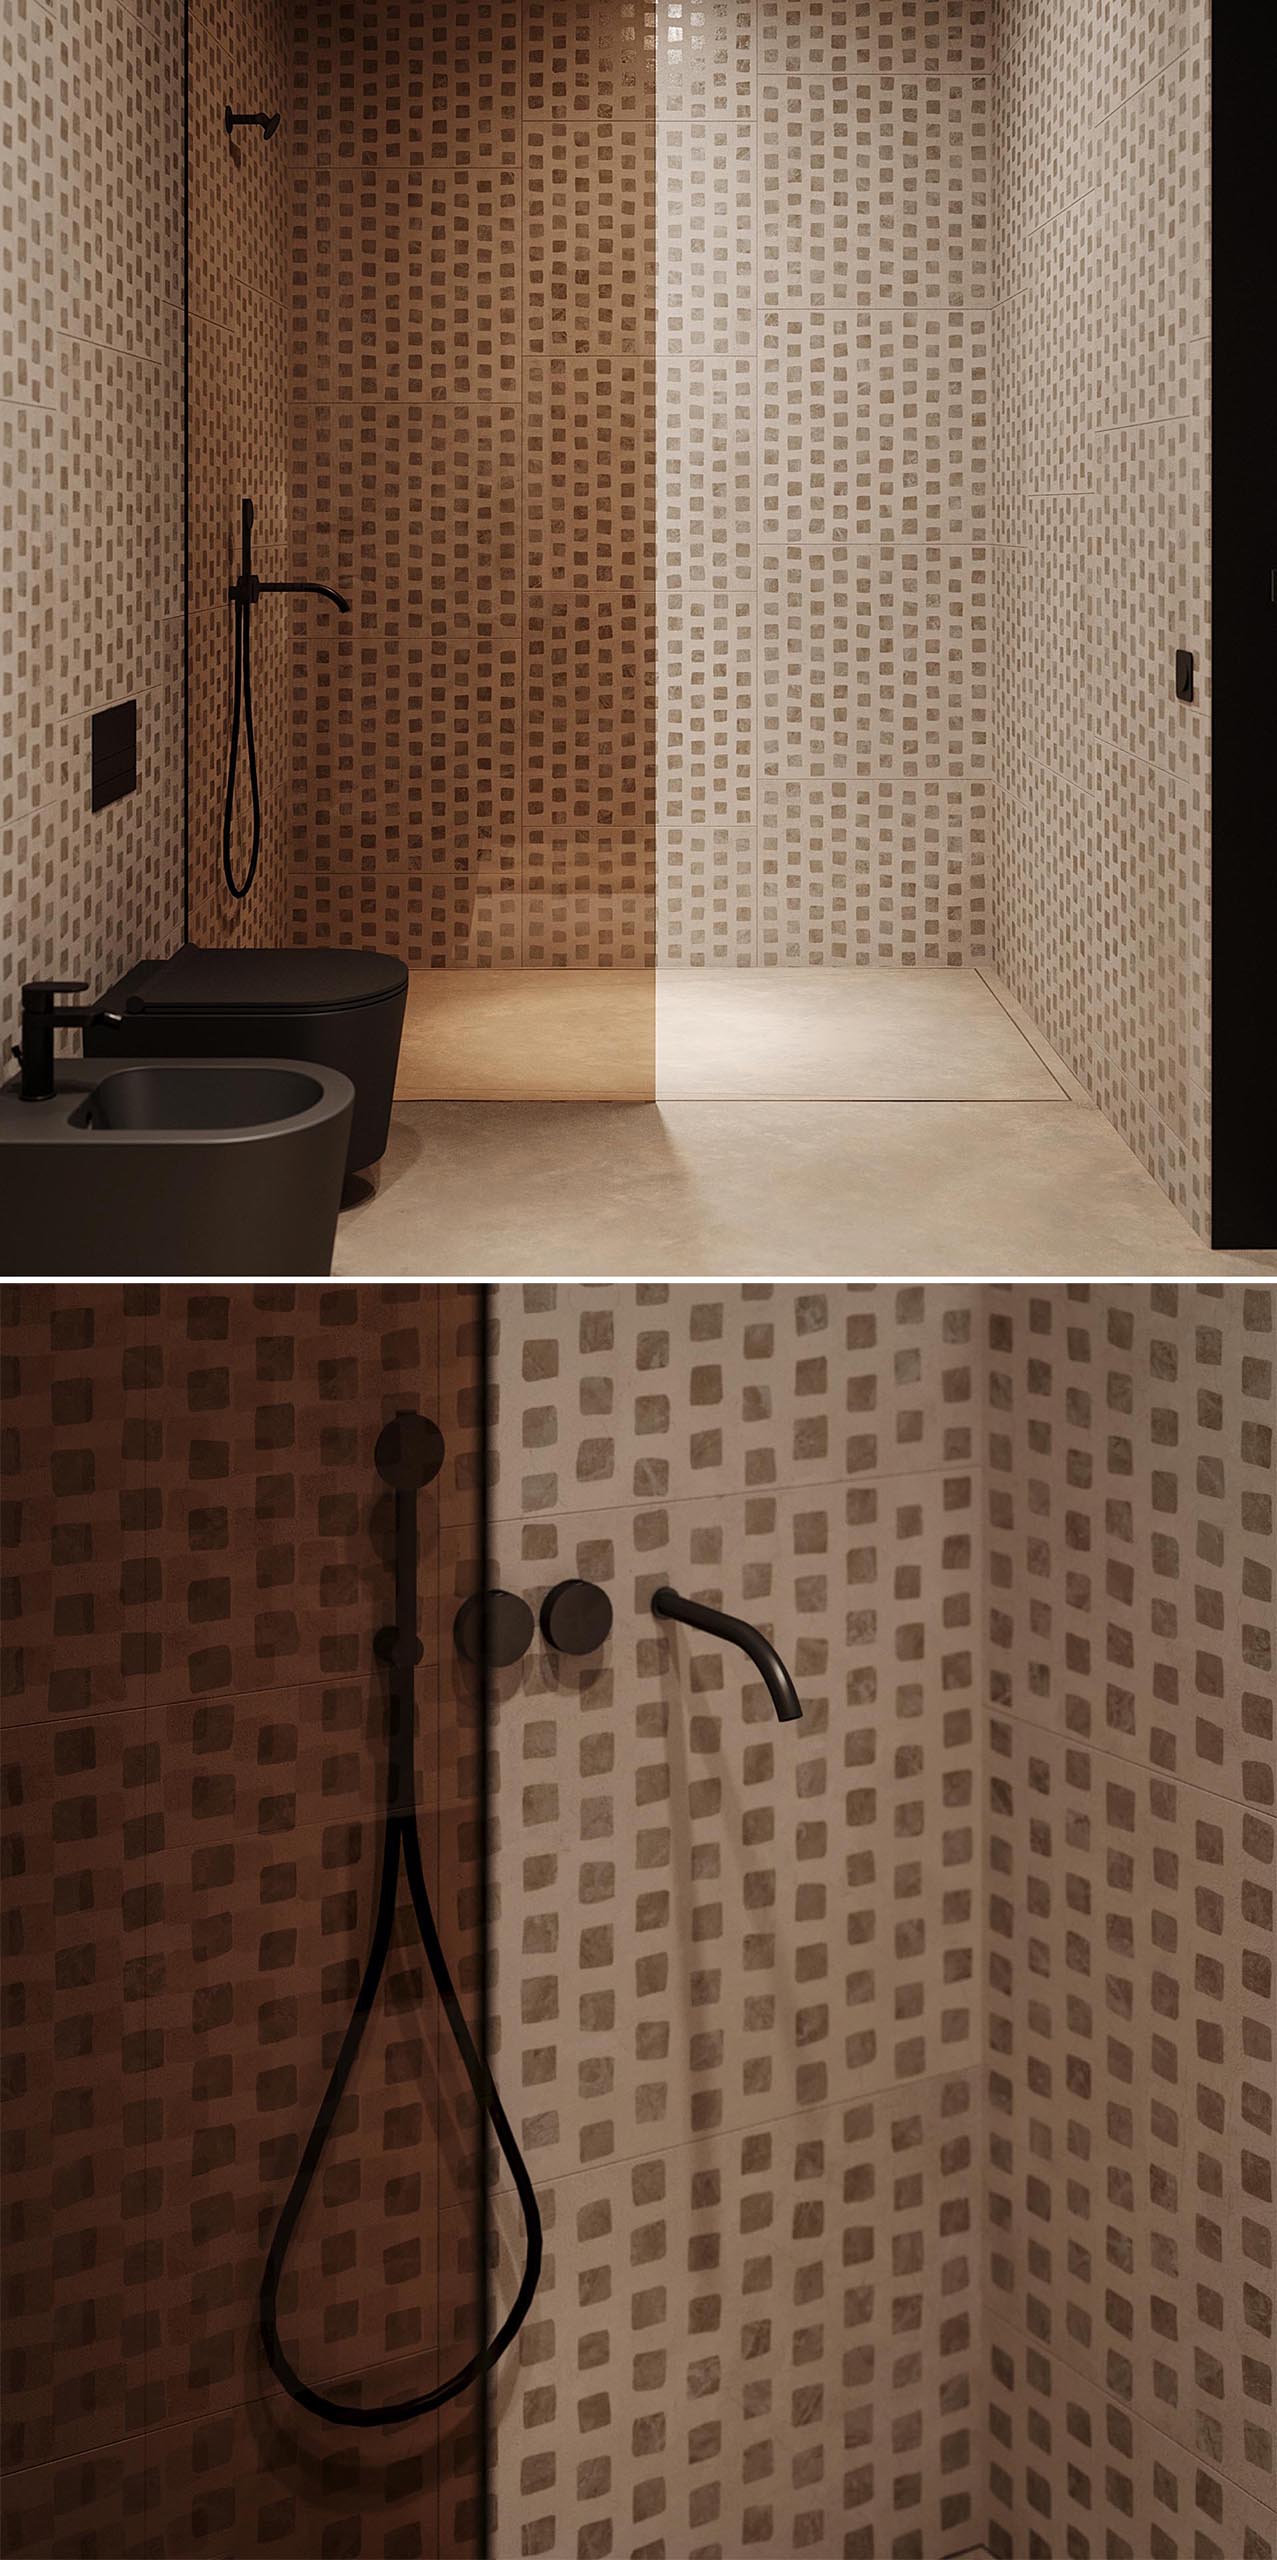 Современная ванная комната с узорчатыми стенами, черными акцентами, высокими тонкими зеркалами и душевой кабиной с перегородкой из тонированного стекла.